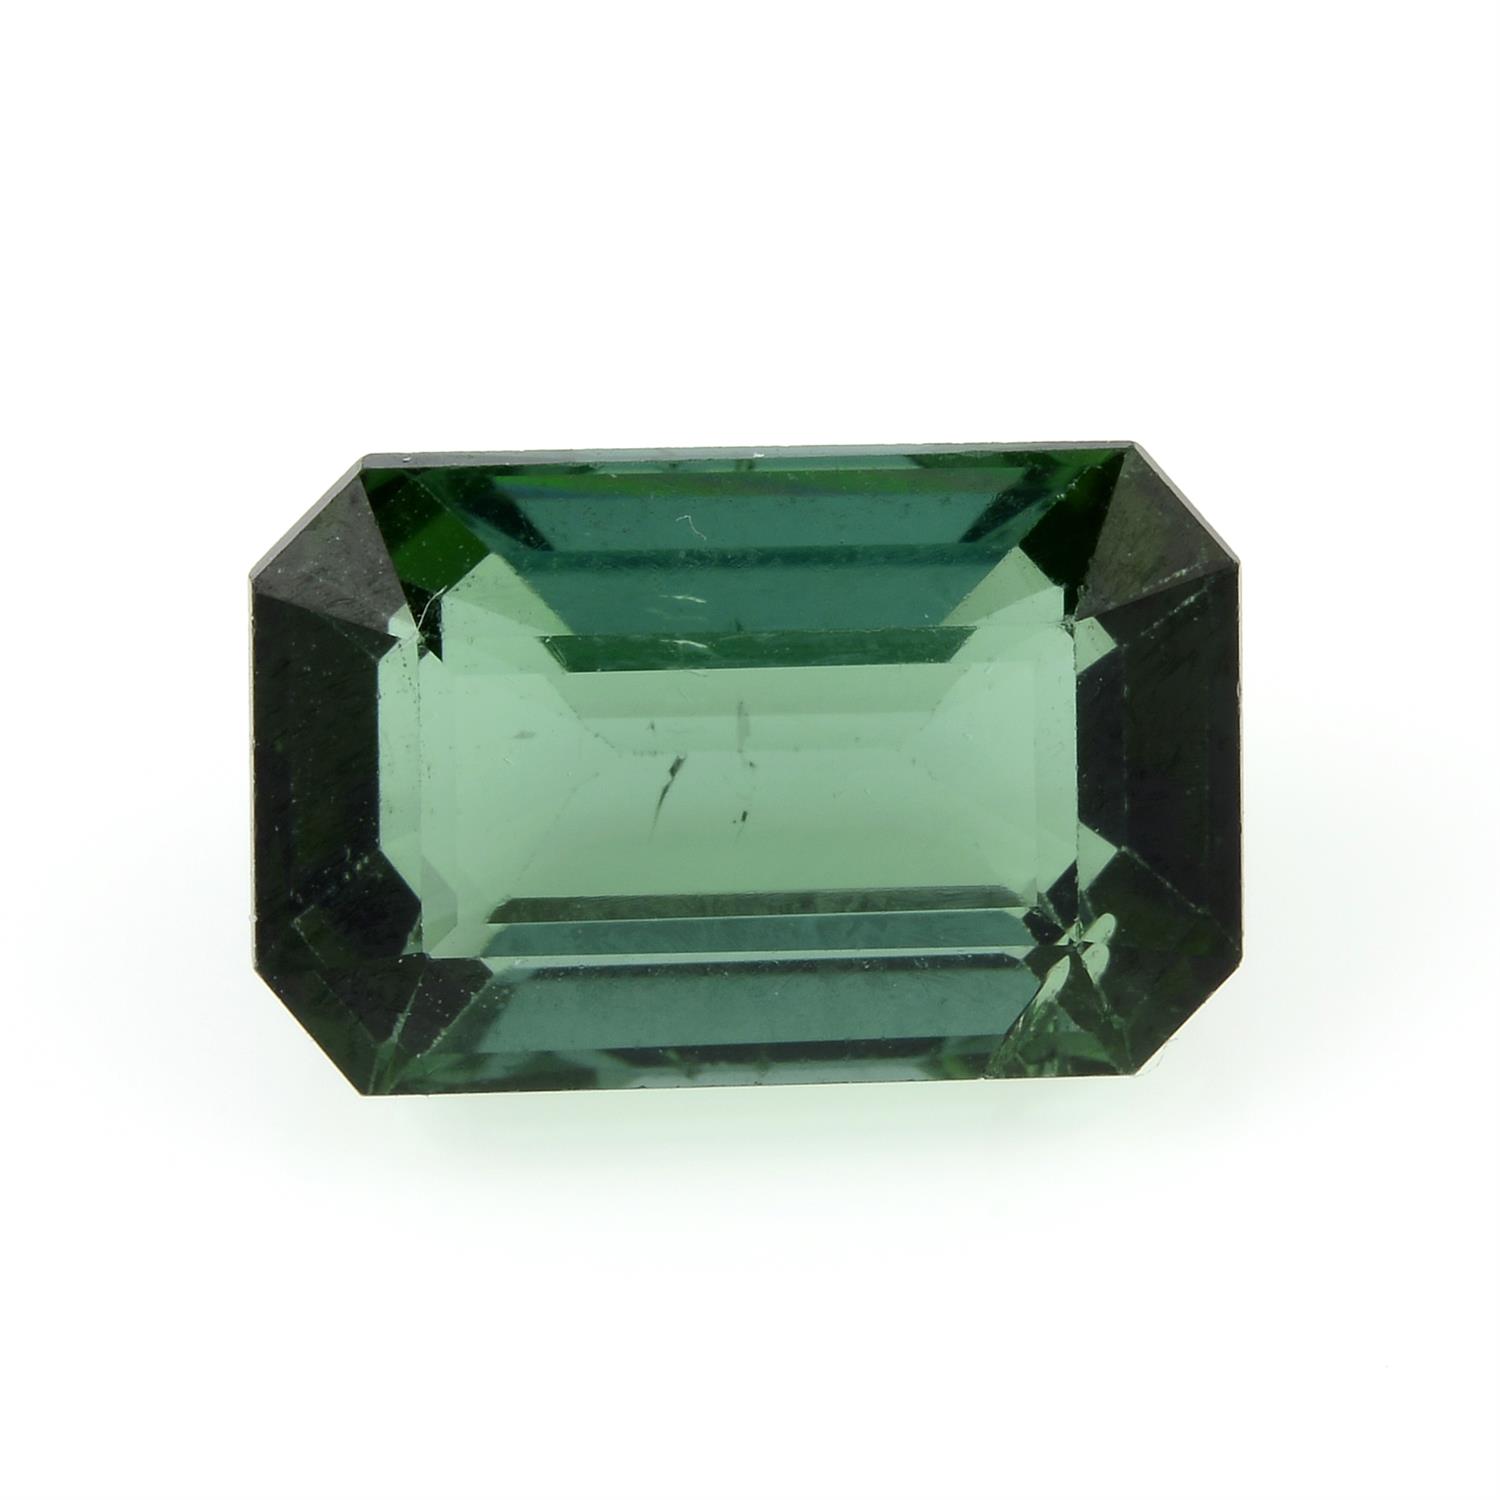 A rectangular-shape green tourmaline, weight 2.76cts.